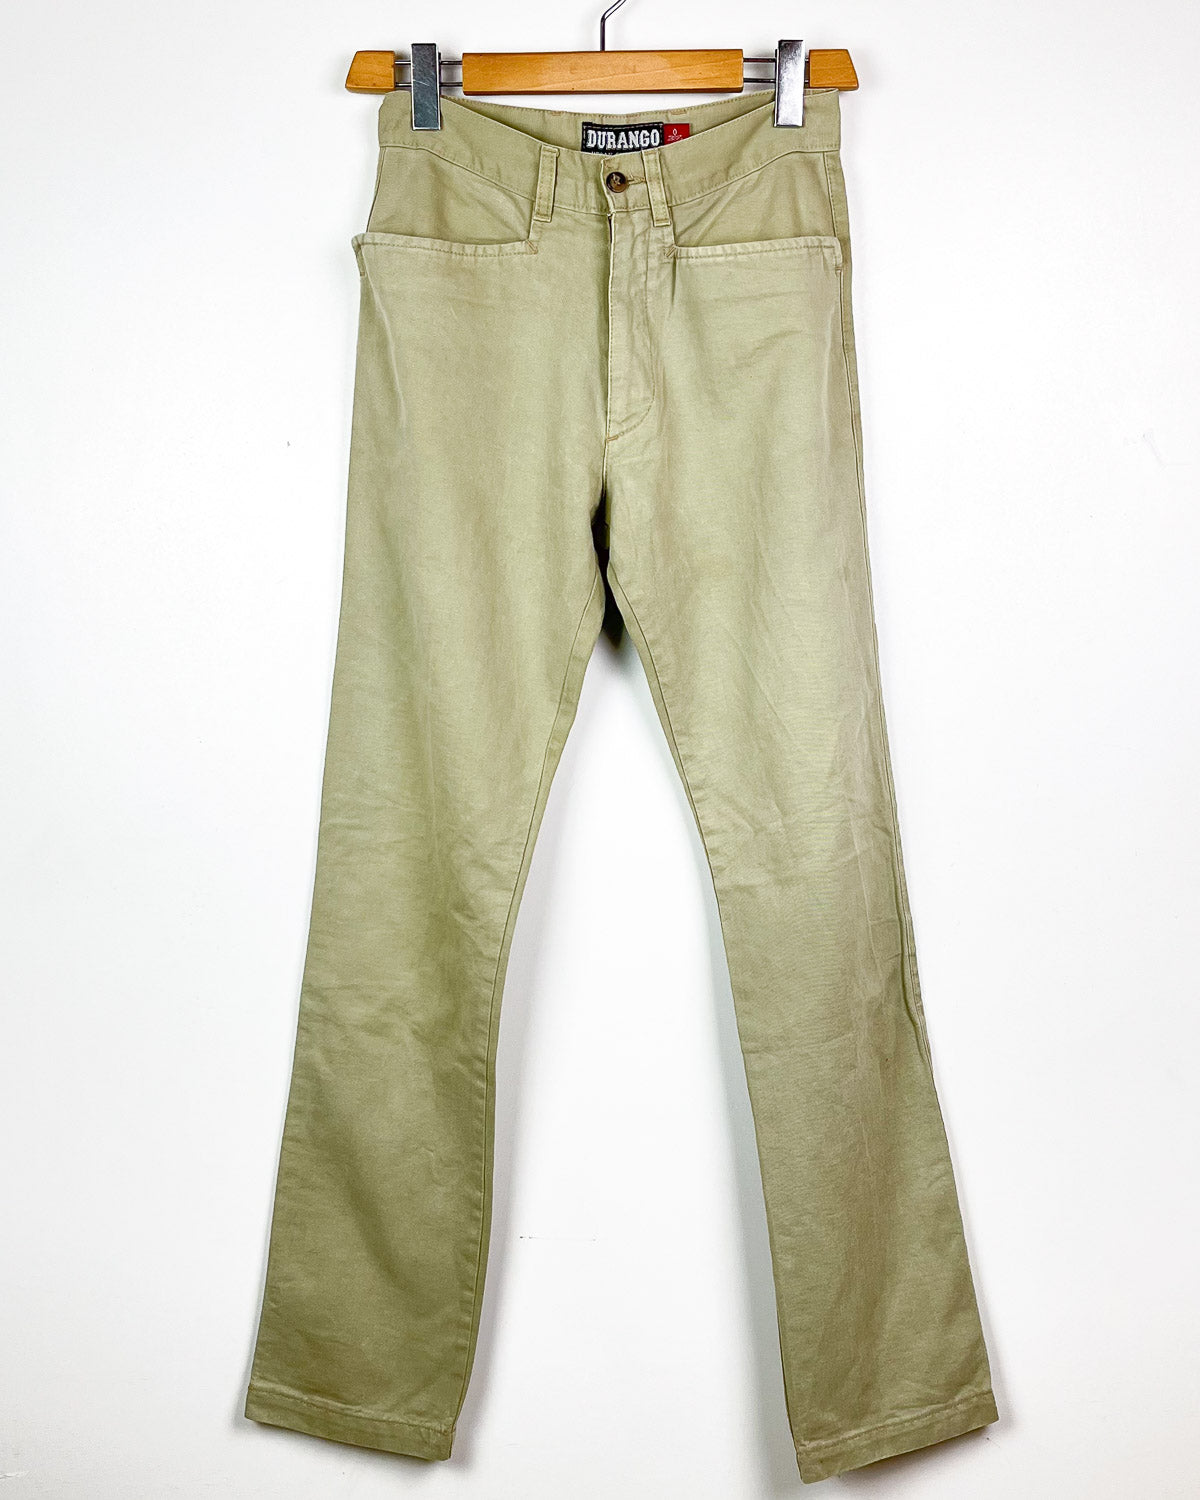 Durango - Vintage Pants Taglia 40